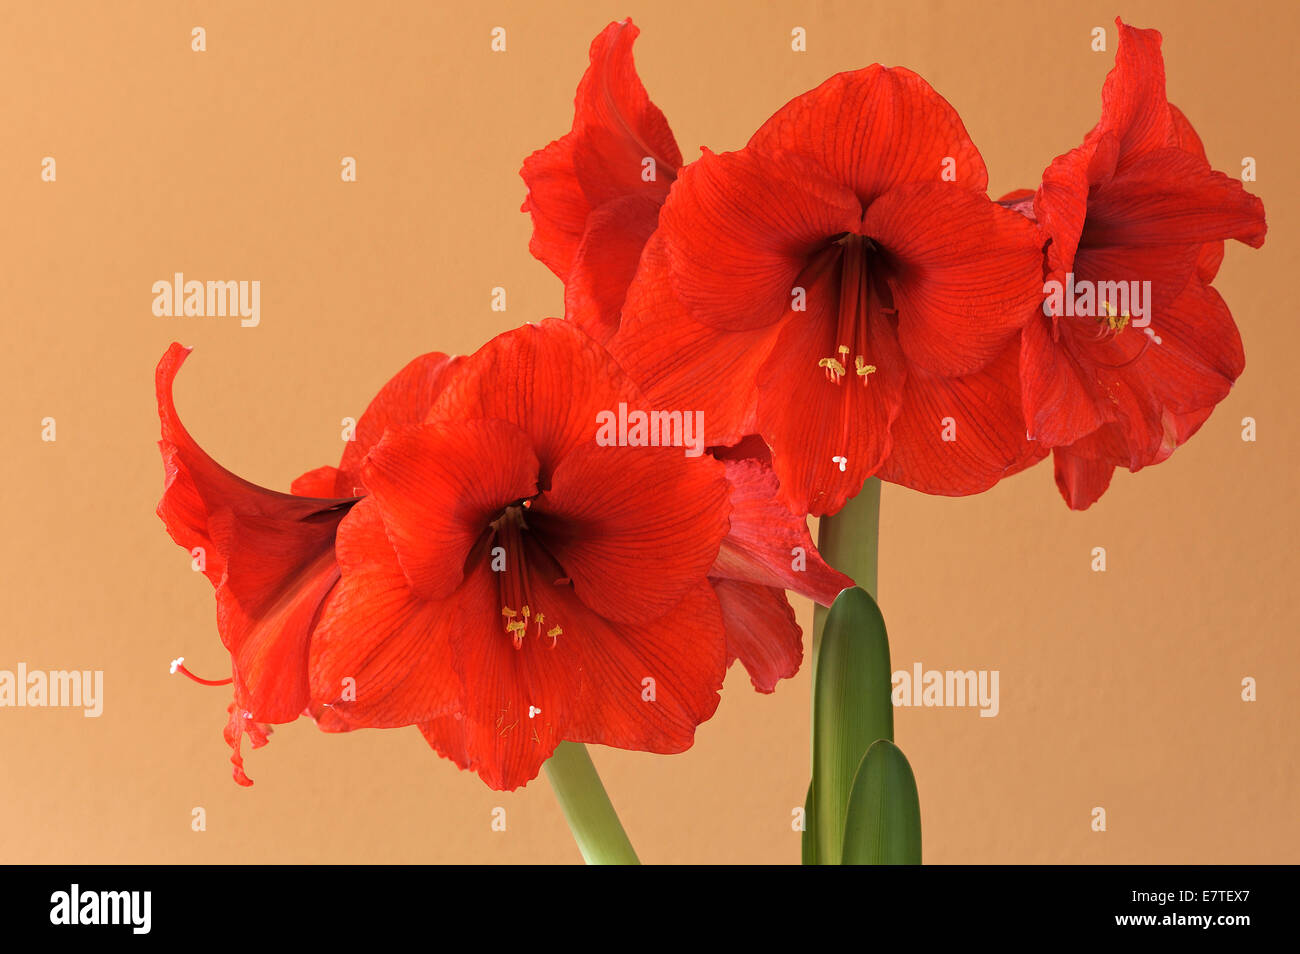 Red Amaryllis (Amaryllis) flowers Stock Photo